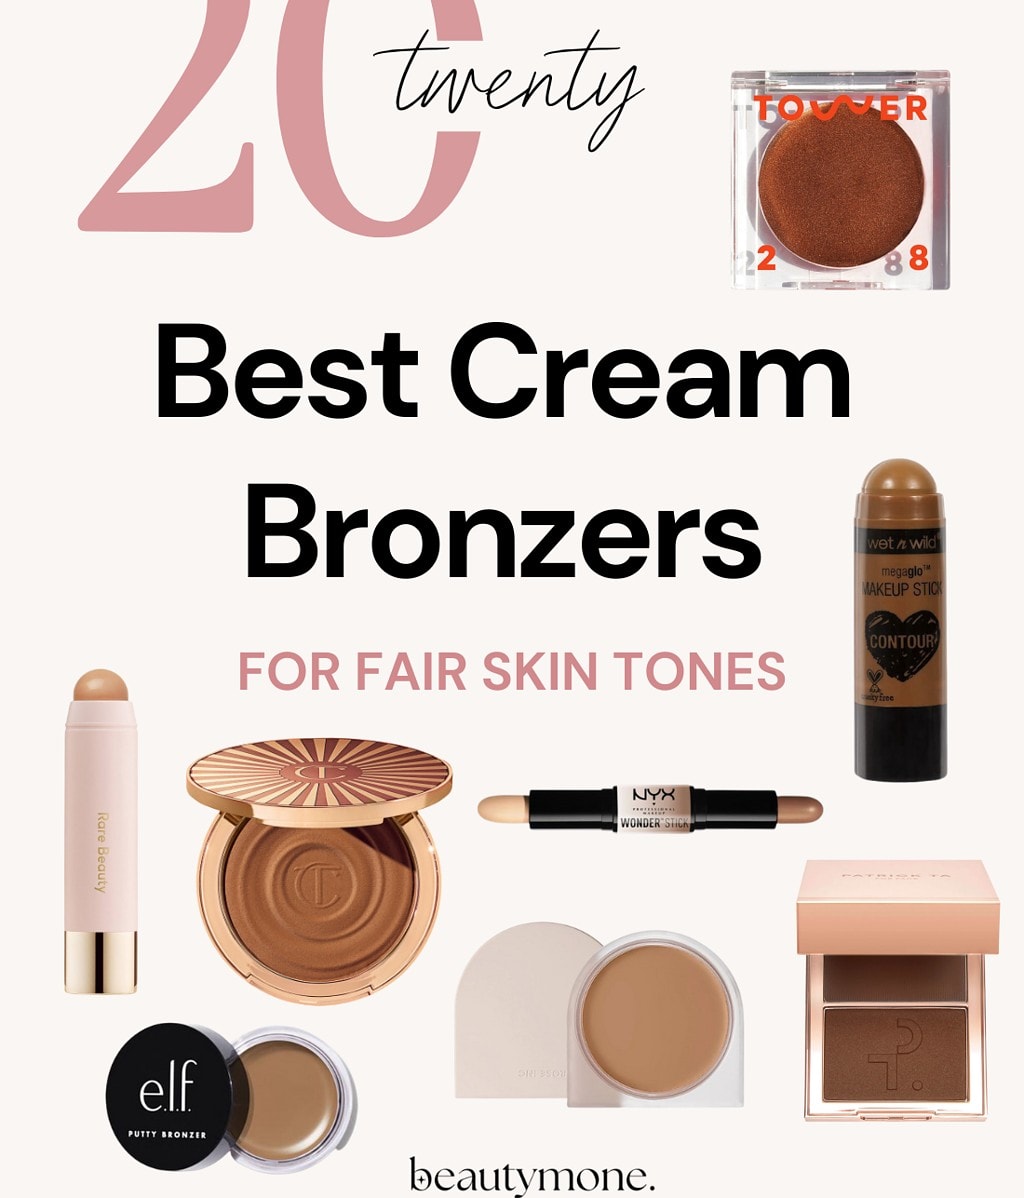 Best Cream Bronzers, Best Cream Bronzers For Fair Skin